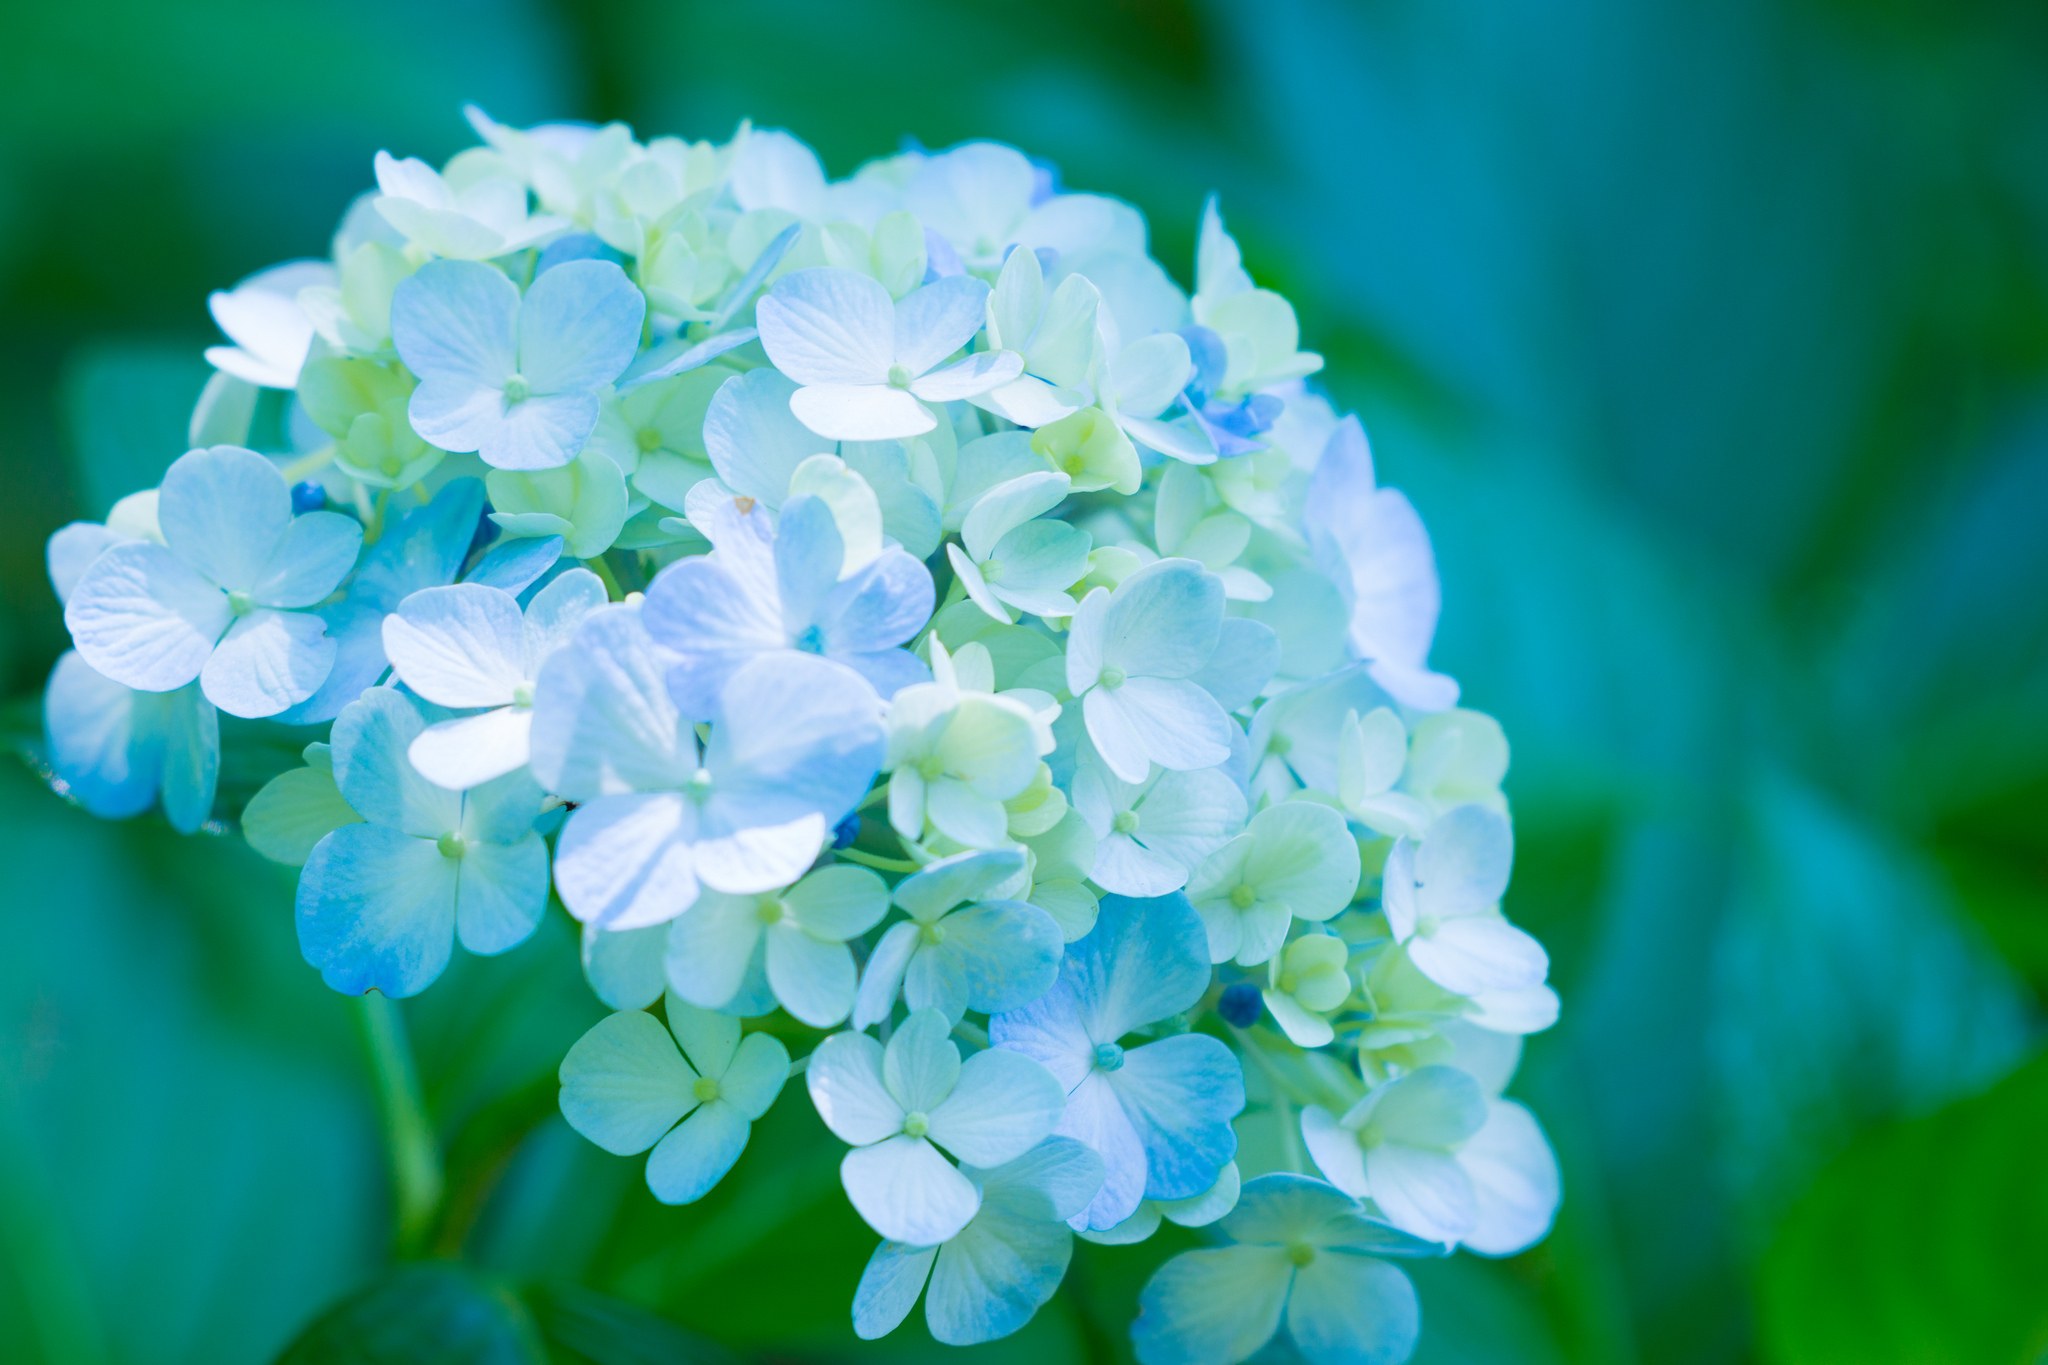 Hình nền hoa Hortensia: Nếu bạn yêu thích vẻ đẹp của hoa Hortensia, thì hình nền hoa Hortensia sẽ là sự lựa chọn hoàn hảo cho bạn. Hình ảnh này sẽ mang đến cho bạn sự thư thái và yên bình. Hãy tải hình nền hoa Hortensia và cập nhật cho màn hình điện thoại của bạn ngay hôm nay.